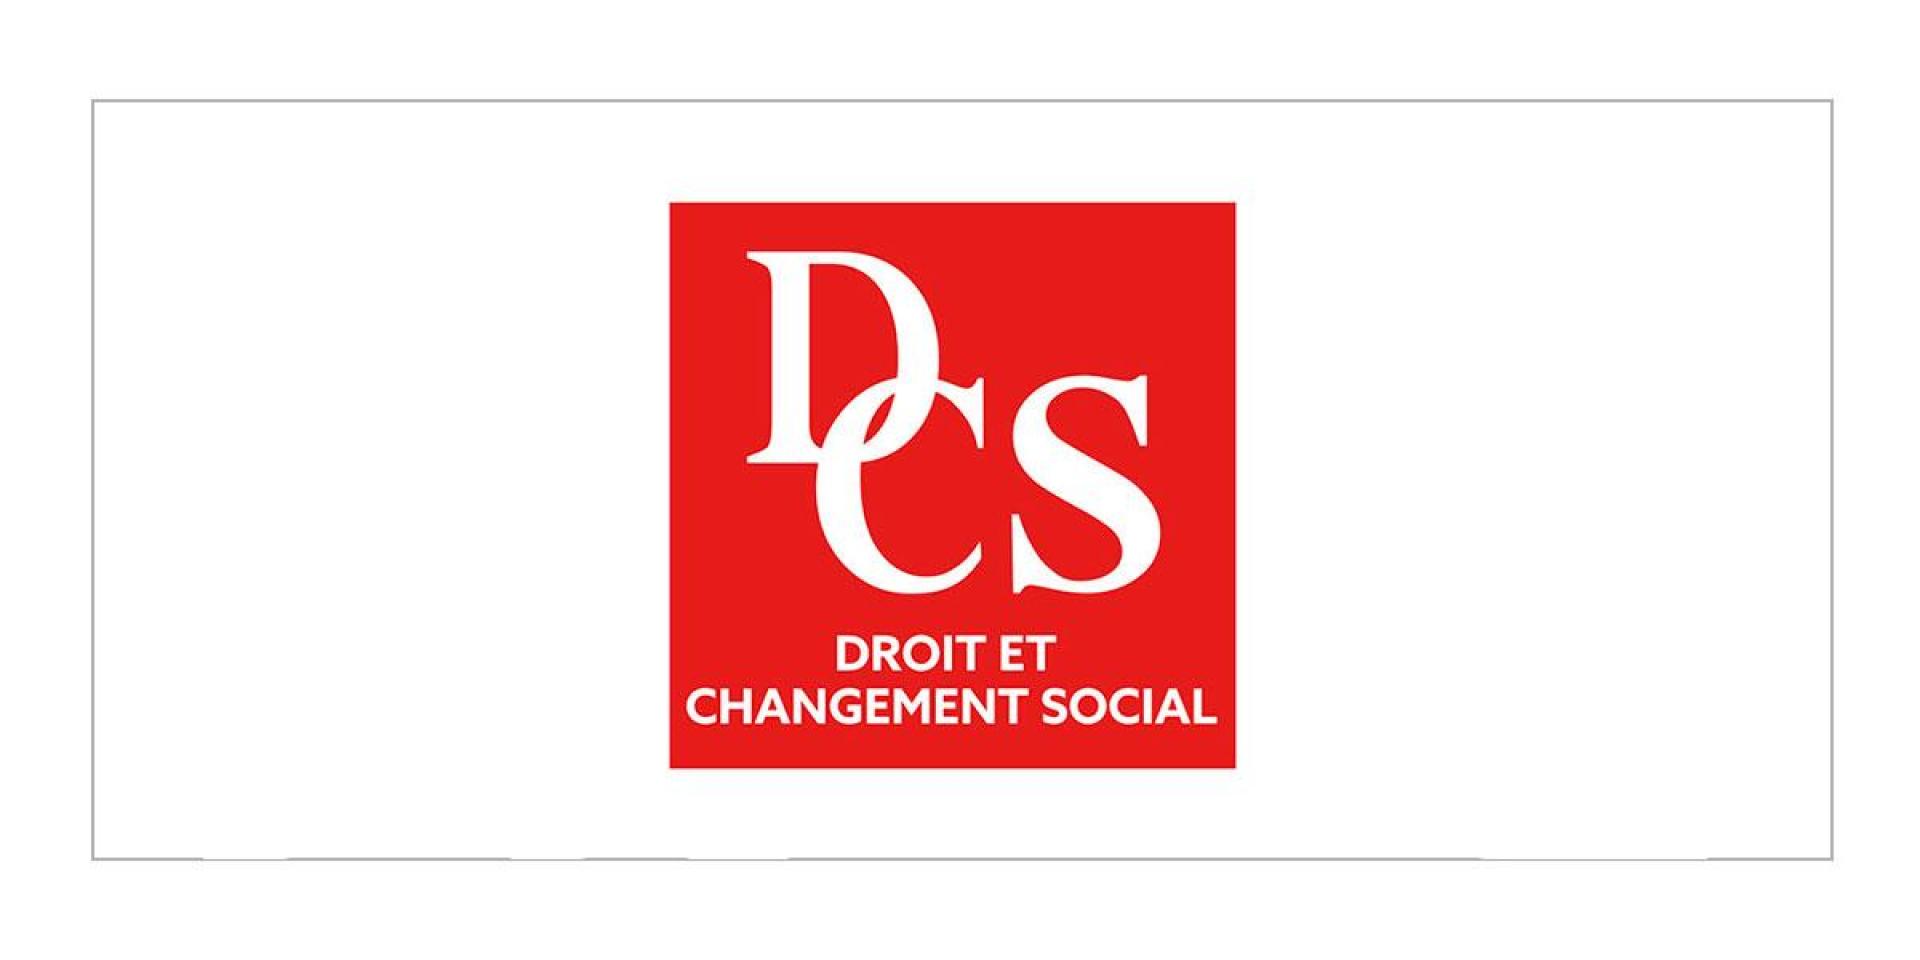 Centro de investigación “Droit et changement social” y Universitè de Paris 1 Panthéon-Sorbonne, Francia